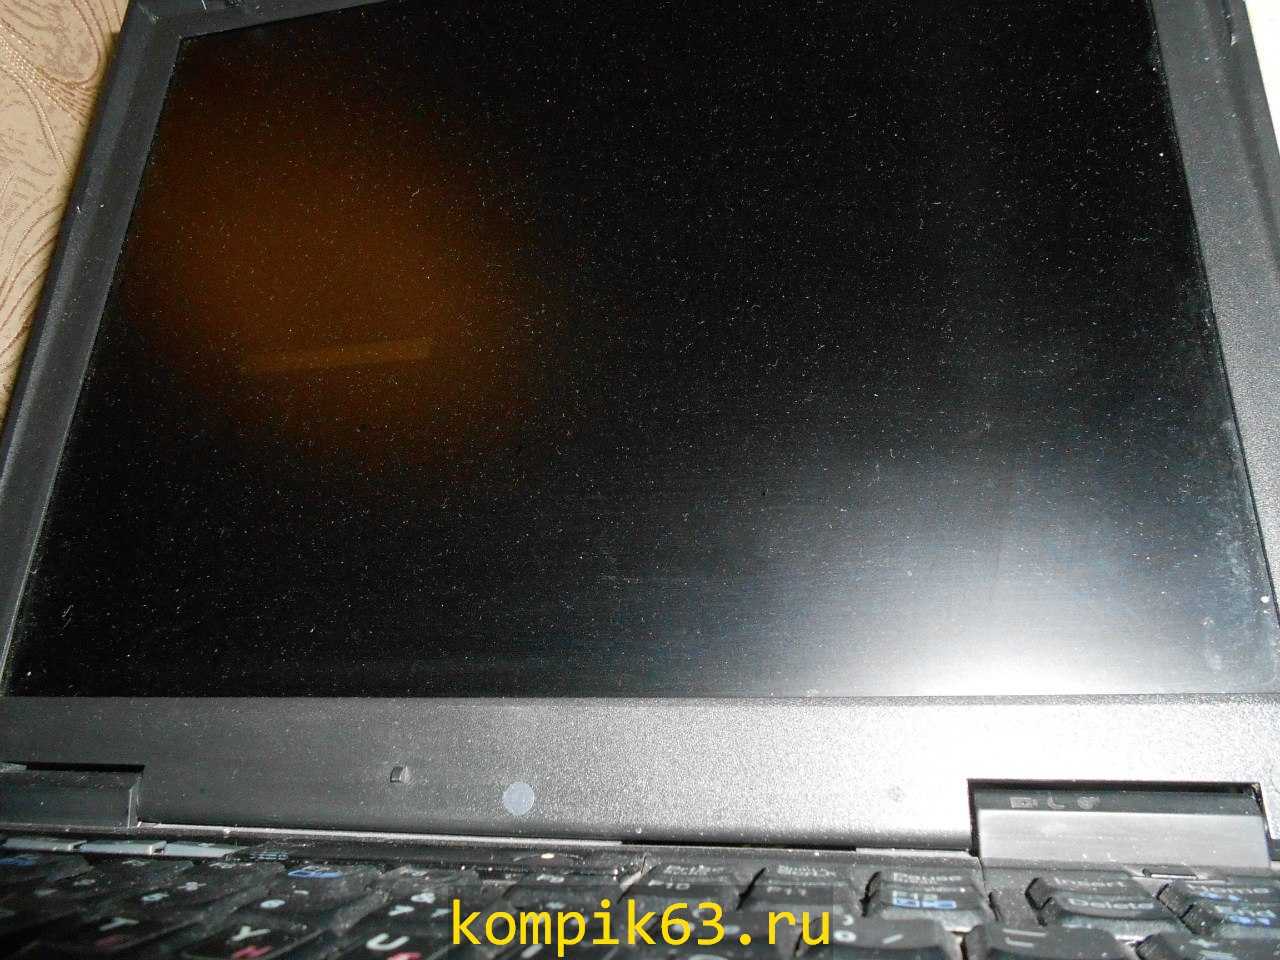 kompik63.ru-027